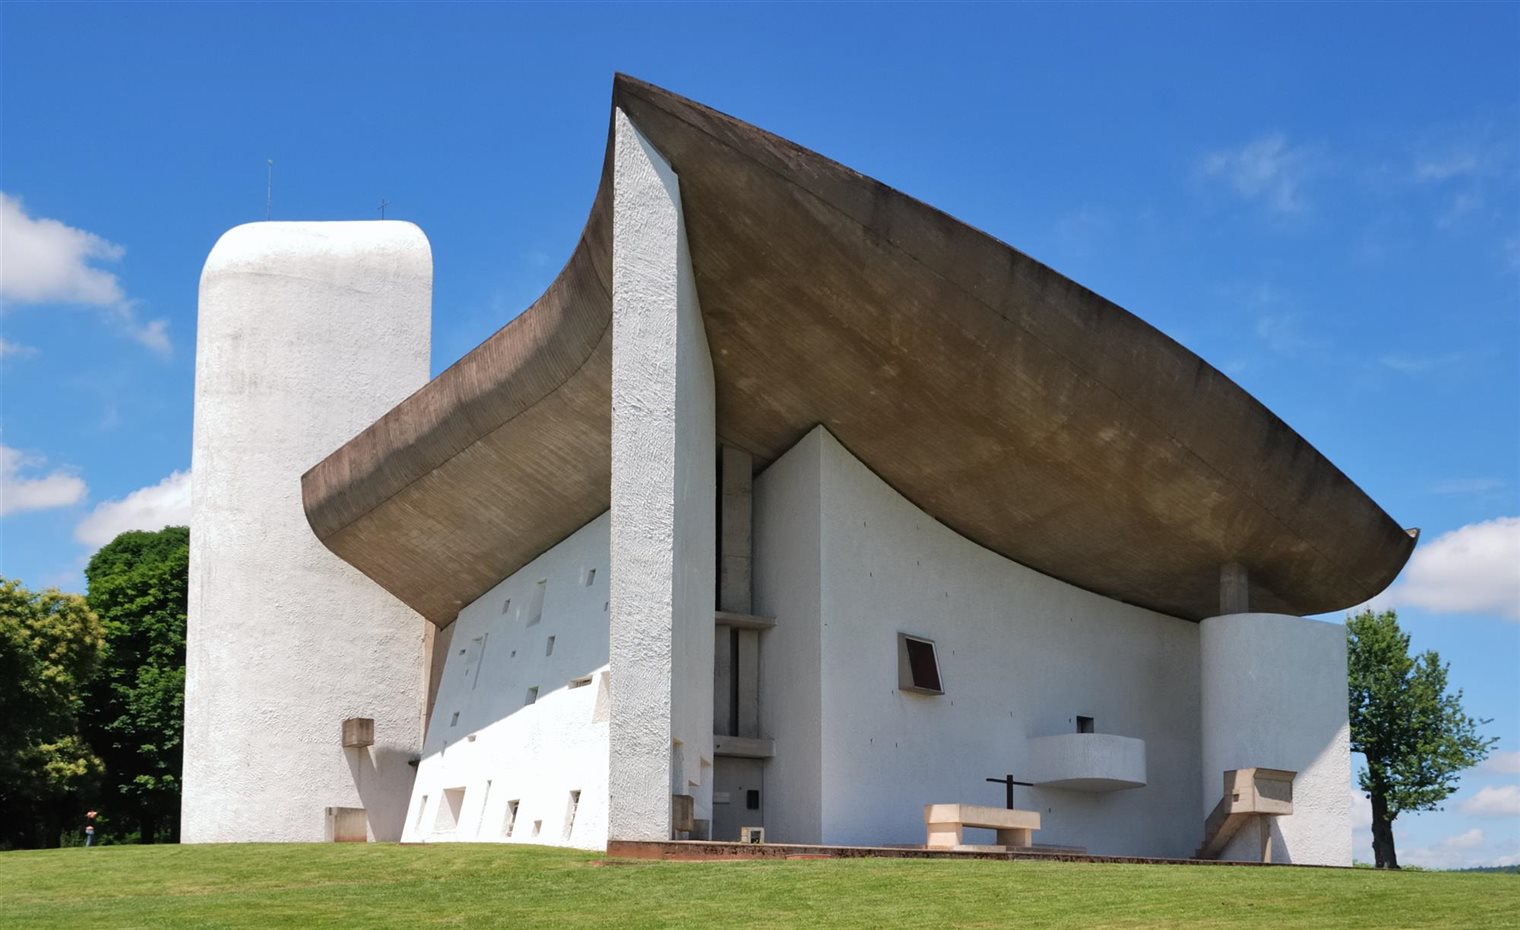 Capilla de Ronchamp, Notre-Dame-du-Haut. Haute Saone (Francia), 1954 Le Corbusier